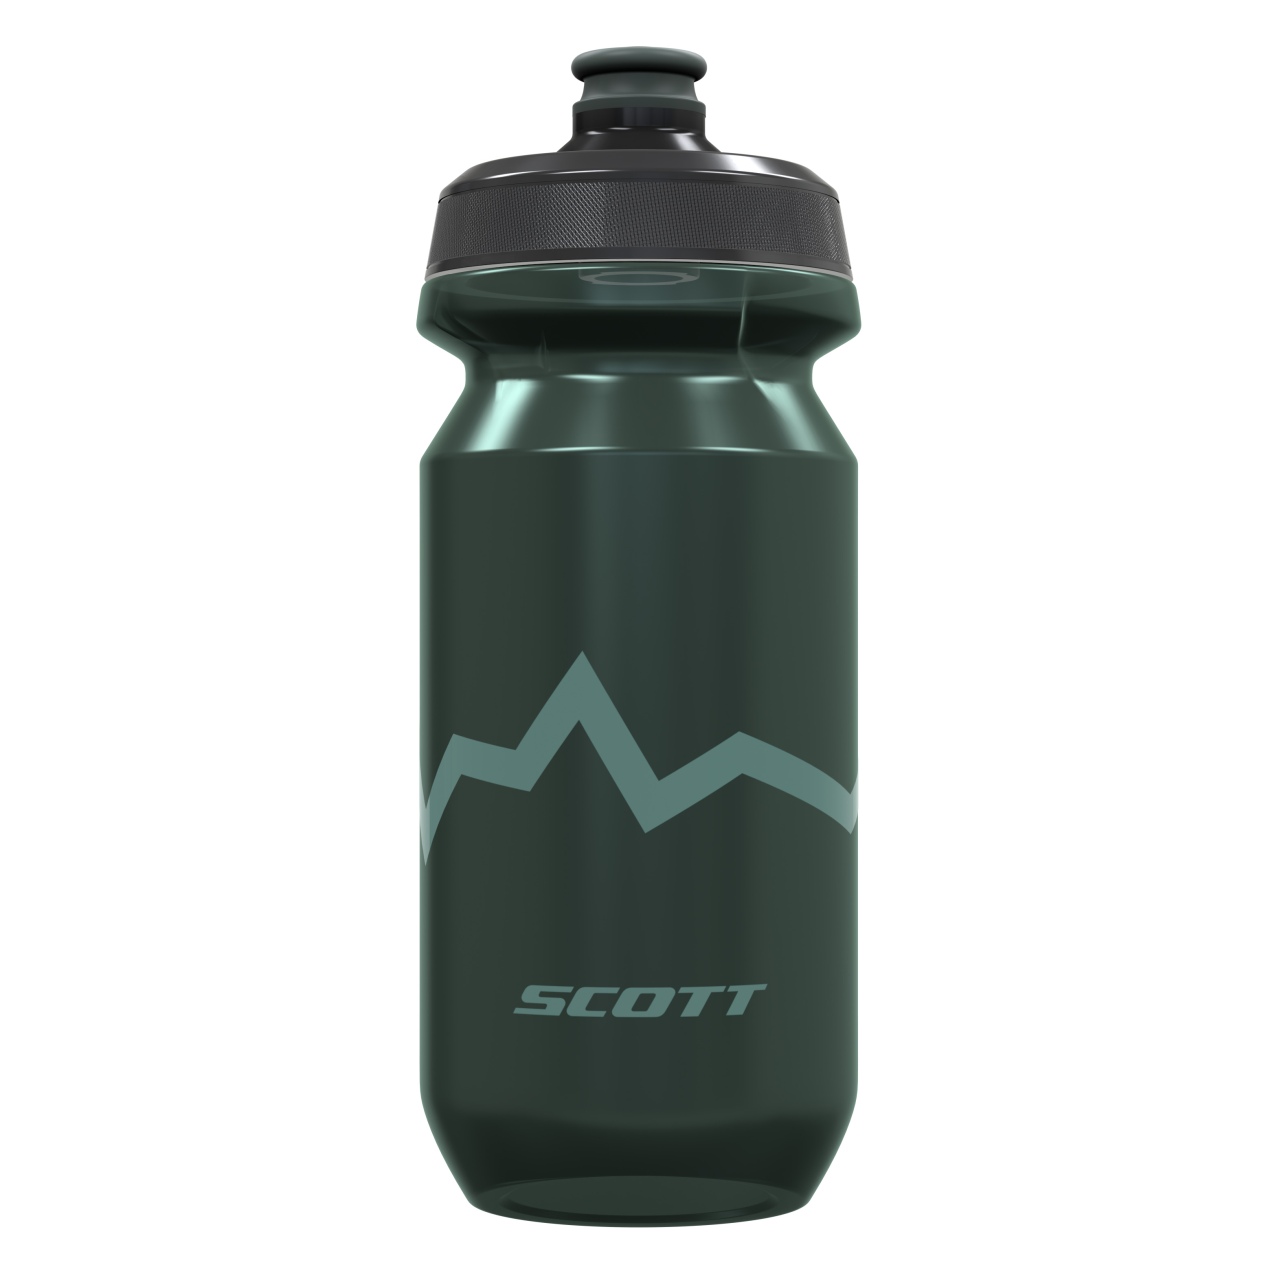 Scott G5 Corporate Fahrrad Trinkflasche 800ml grün